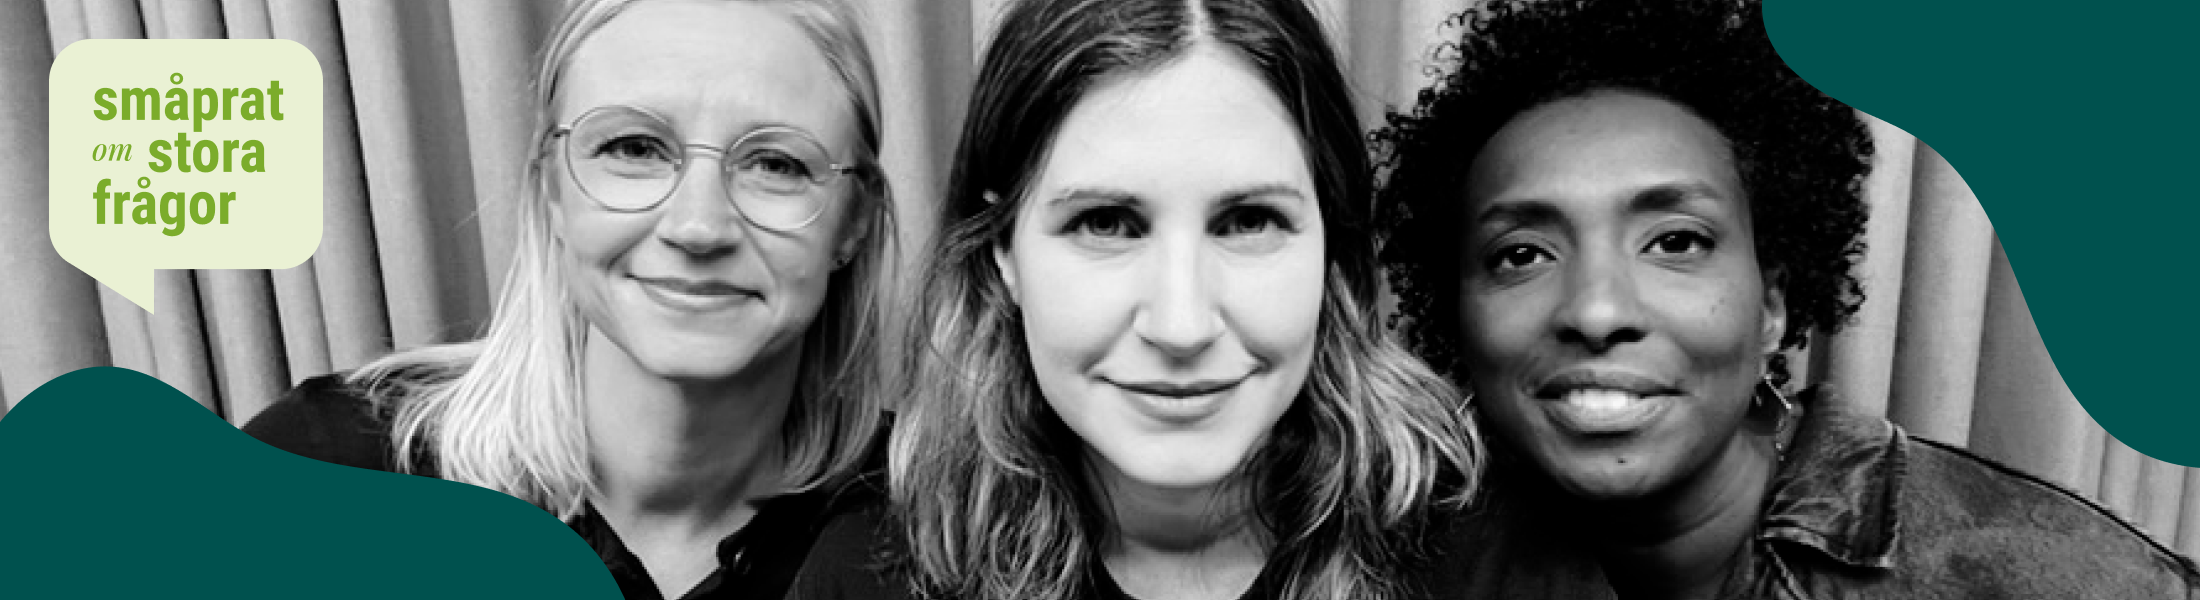 Poddseriens programledare: Anna Axelsson, Nour El-Refai och Maria Wikström